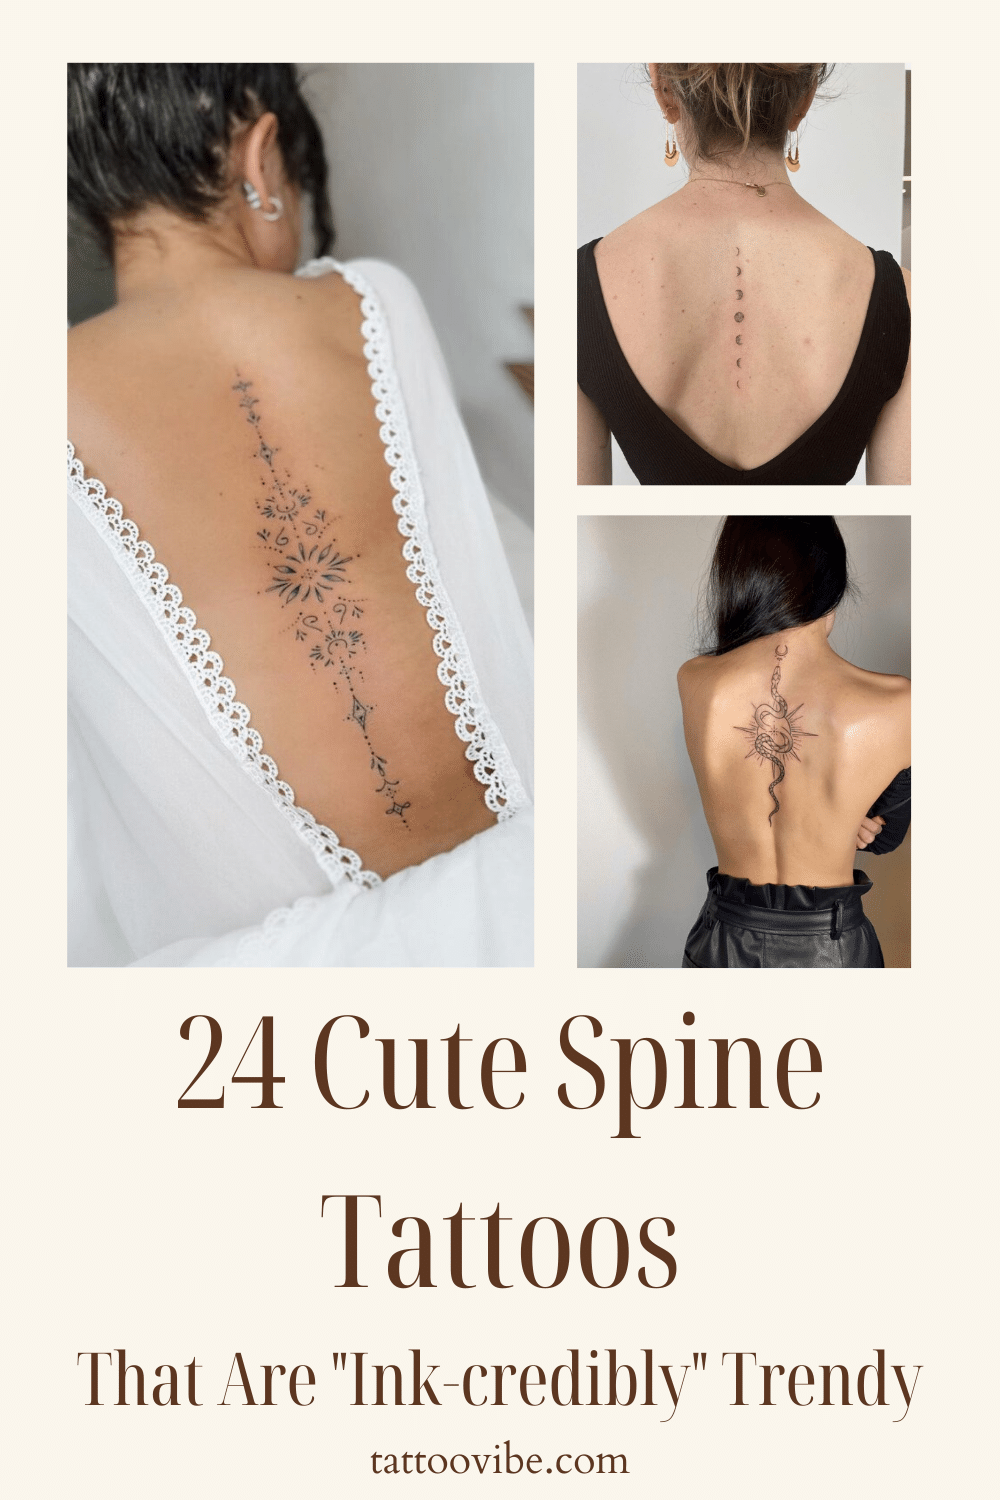 24 tatuagens bonitas na coluna vertebral que estão "incrivelmente" na moda